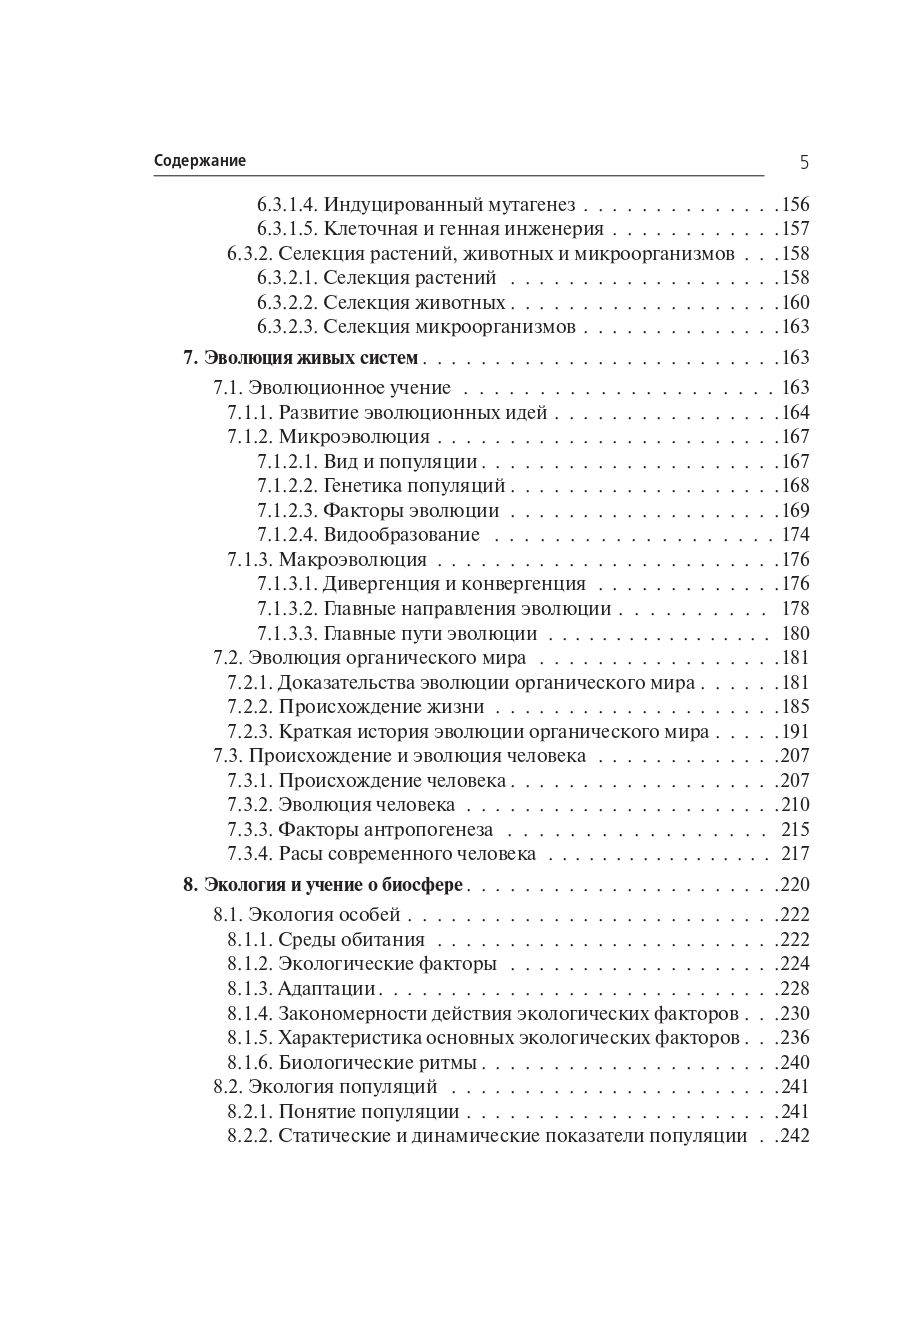 Биология. Большой справочник для подготовки к ЕГЭ и ОГЭ. Изд. 9-е, перераб. и доп.